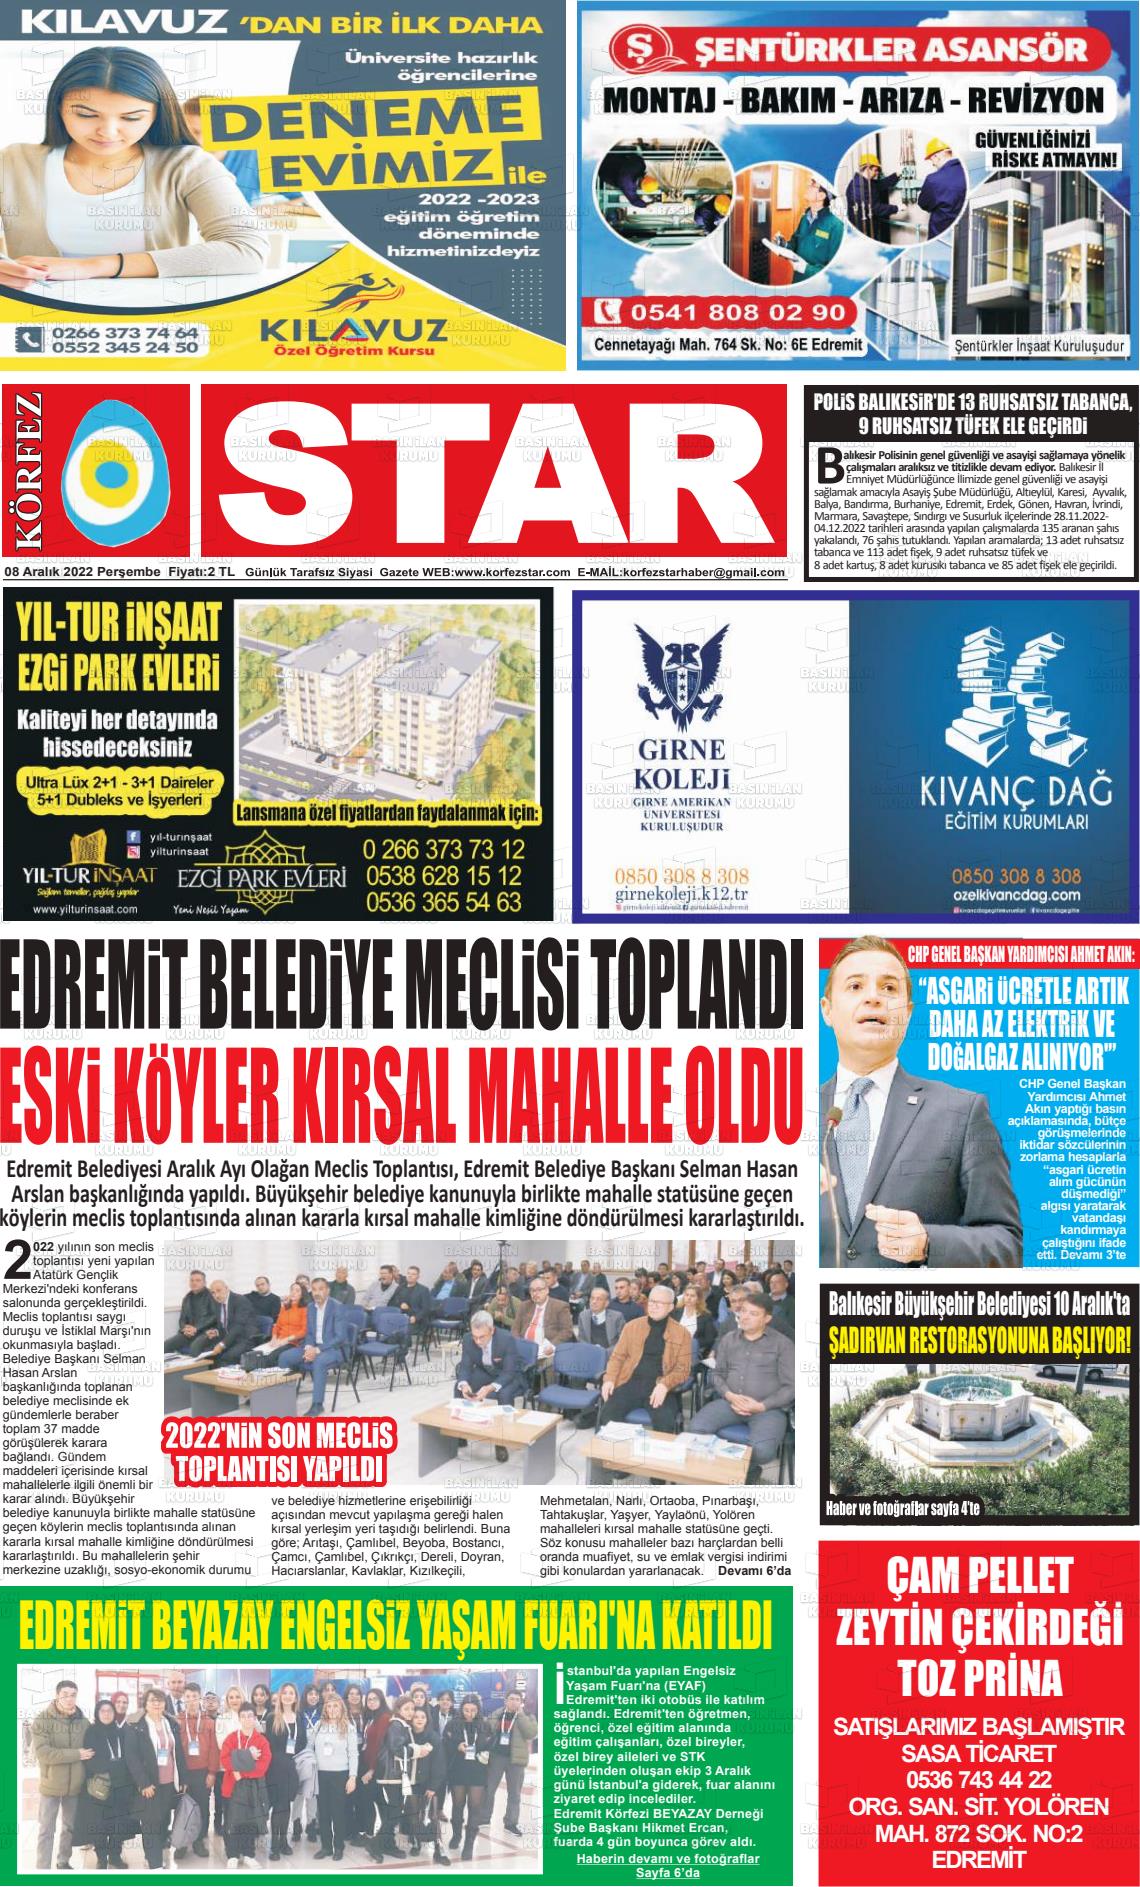 08 Aralık 2022 Körfez Star Gazete Manşeti